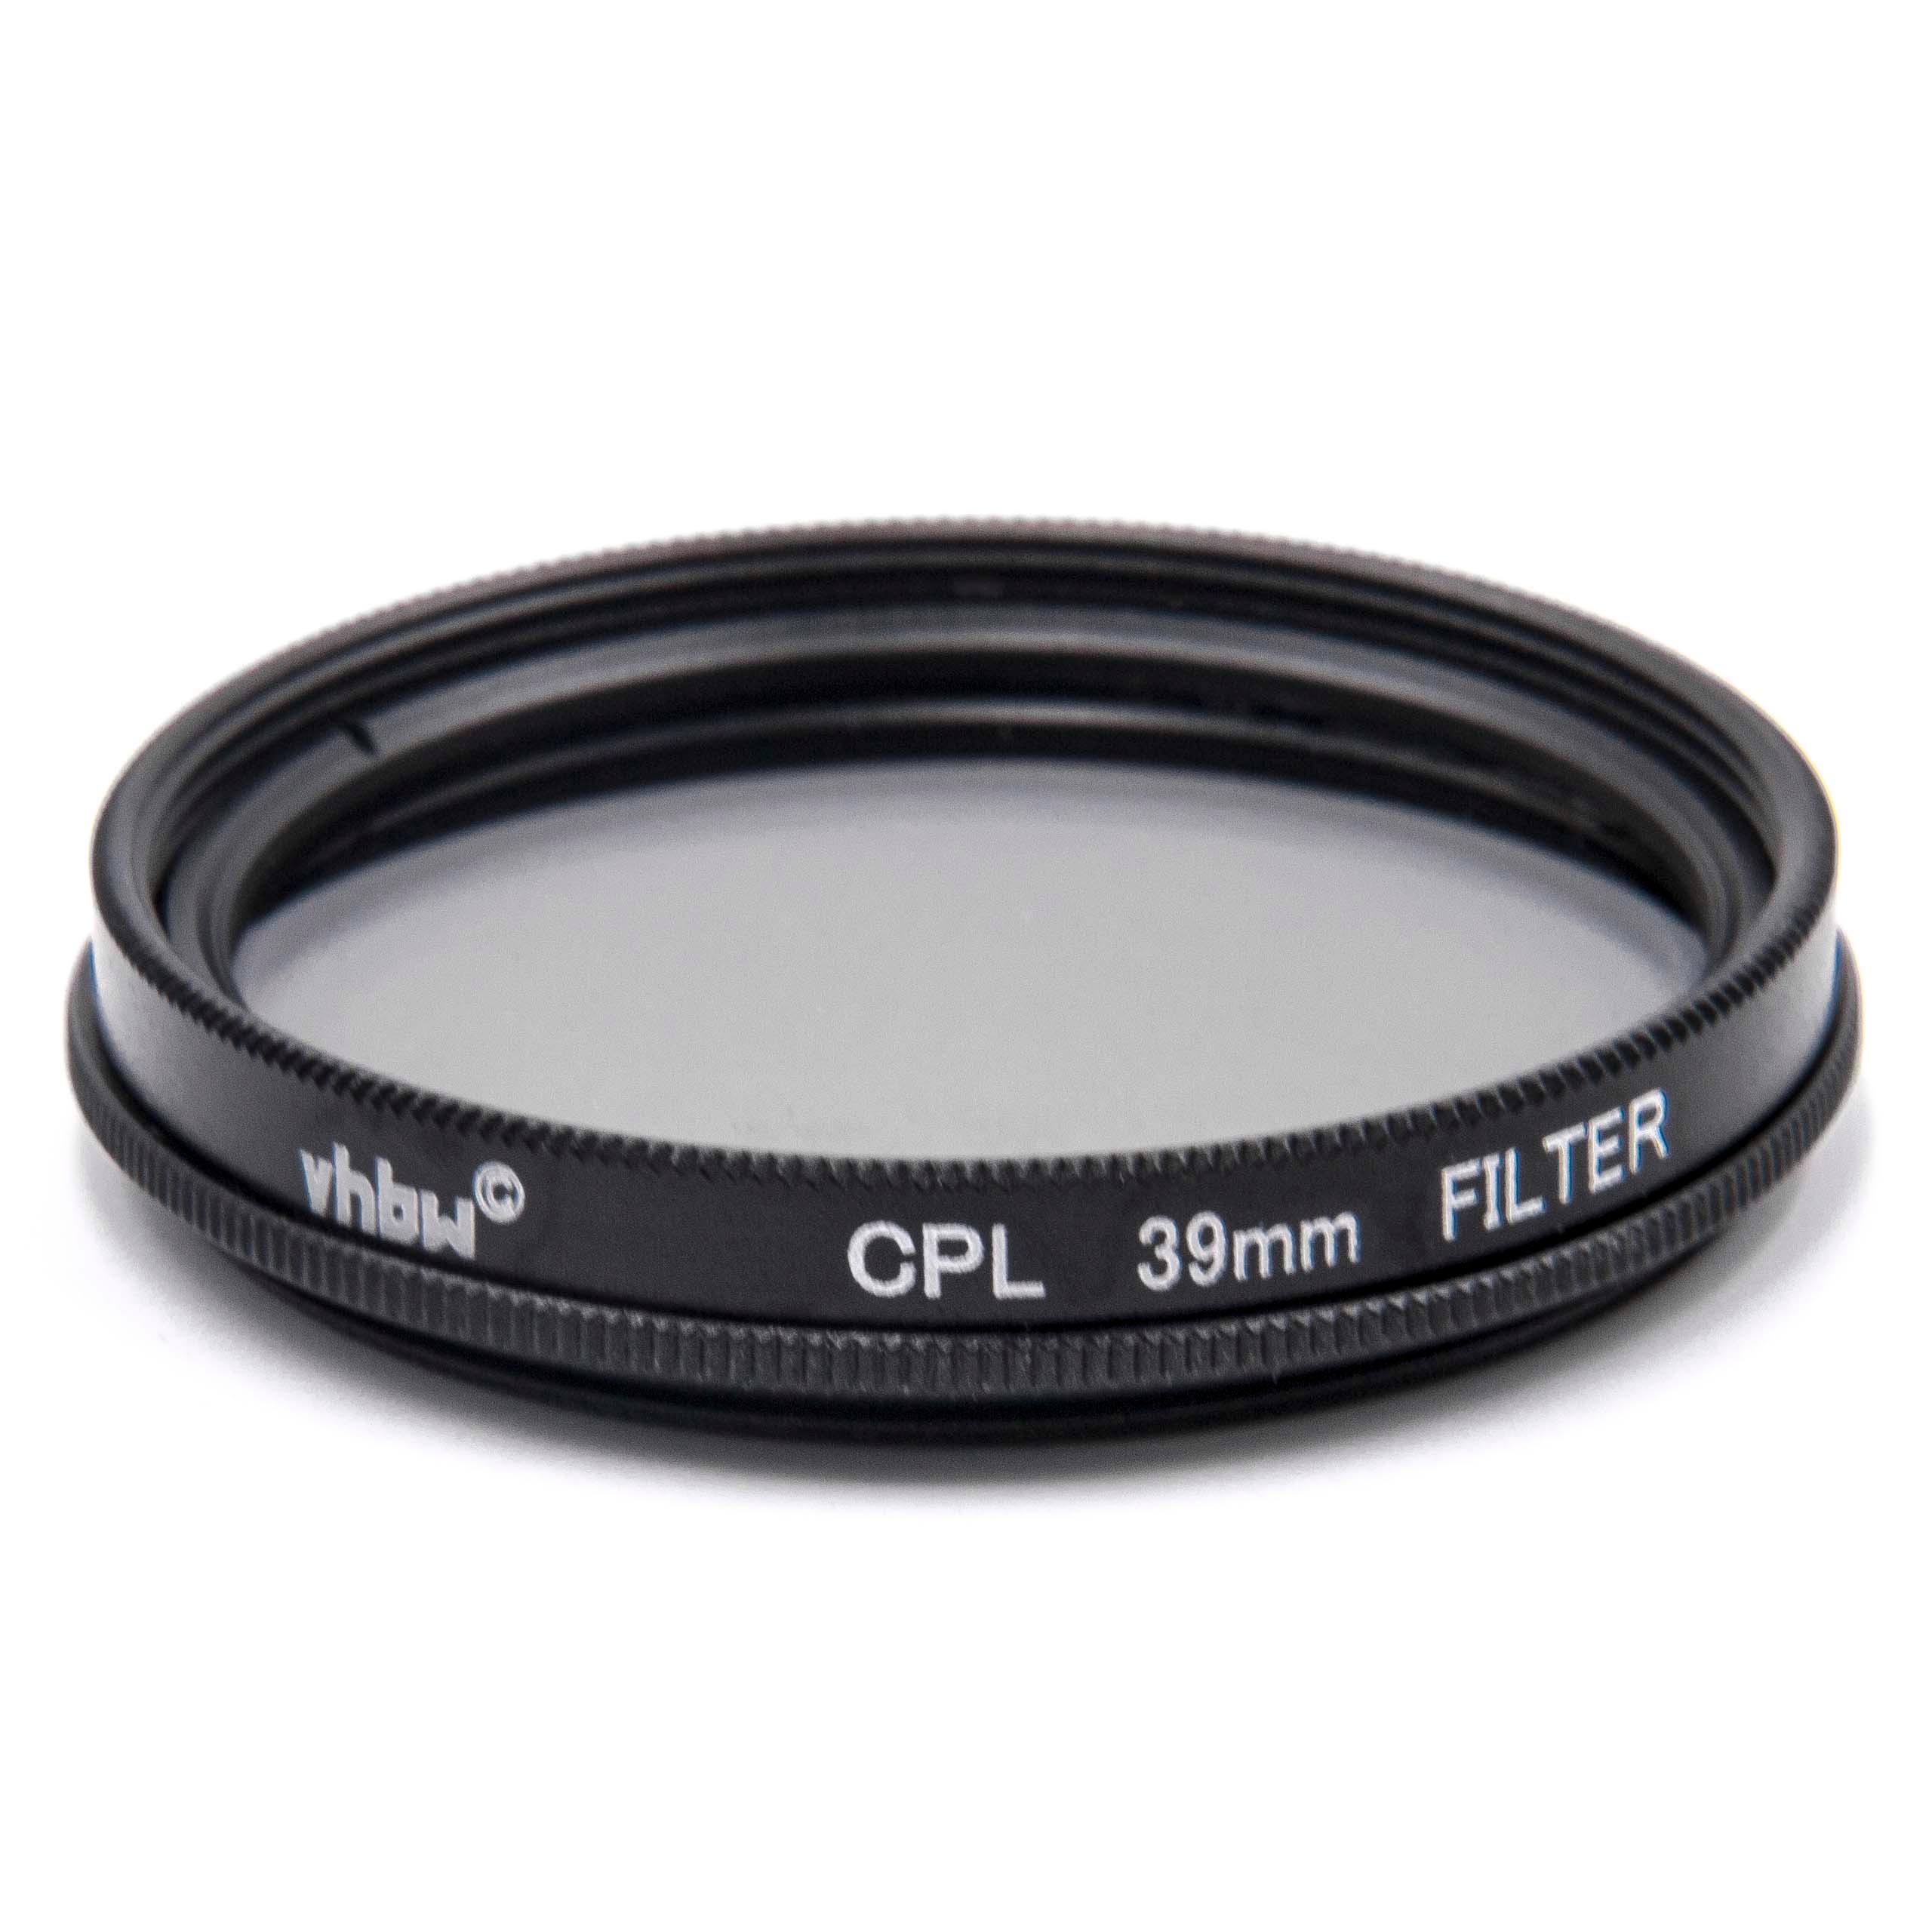 Filtr polaryzacyjny 39mm do różnych obiektywów aparatów - filtr CPL 